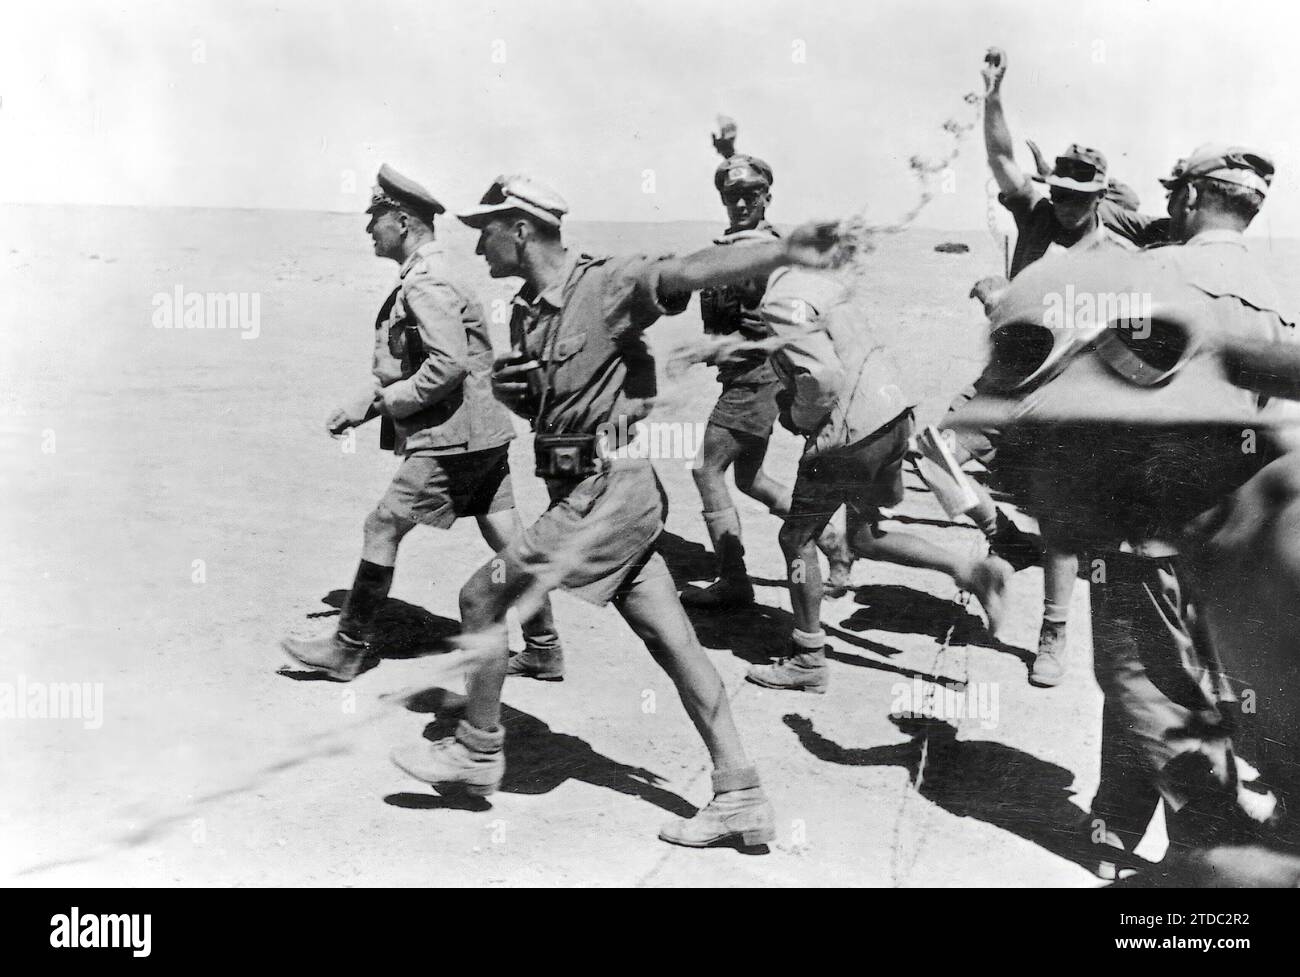 Égypte, 1942. La Seconde Guerre mondiale Le maréchal Rommel passe en revue personnellement la première ligne défensive de ses troupes dans le secteur d'El Alamein. Crédit : Album / Archivo ABC / Transocean,Gesellschaft Banque D'Images